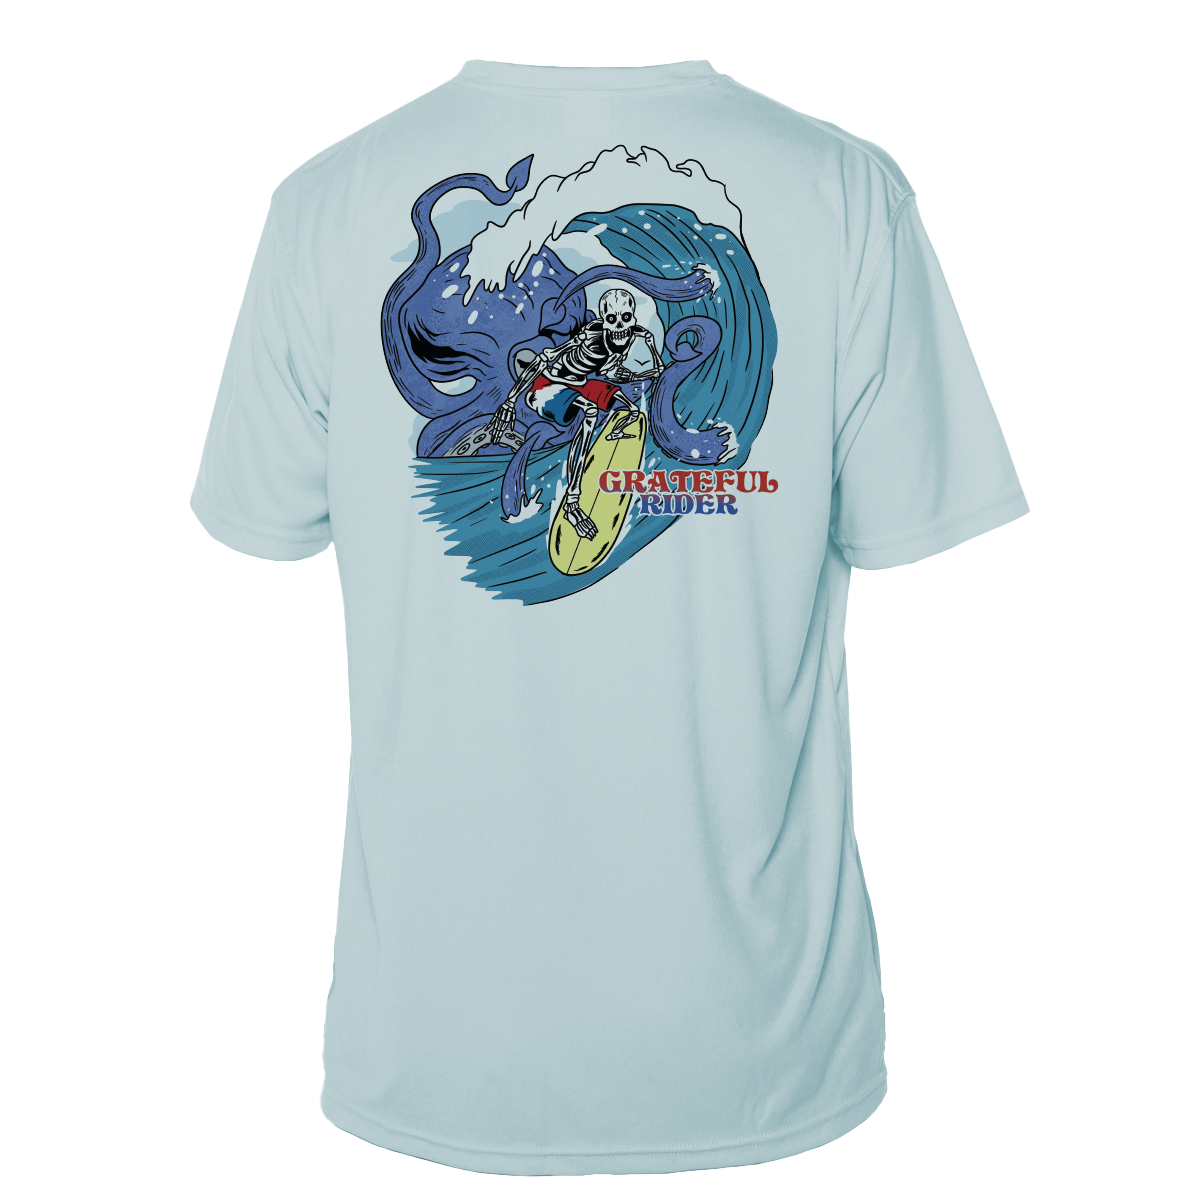 Grateful Rider Outride the Kraken Short Sleeve UV Shirt